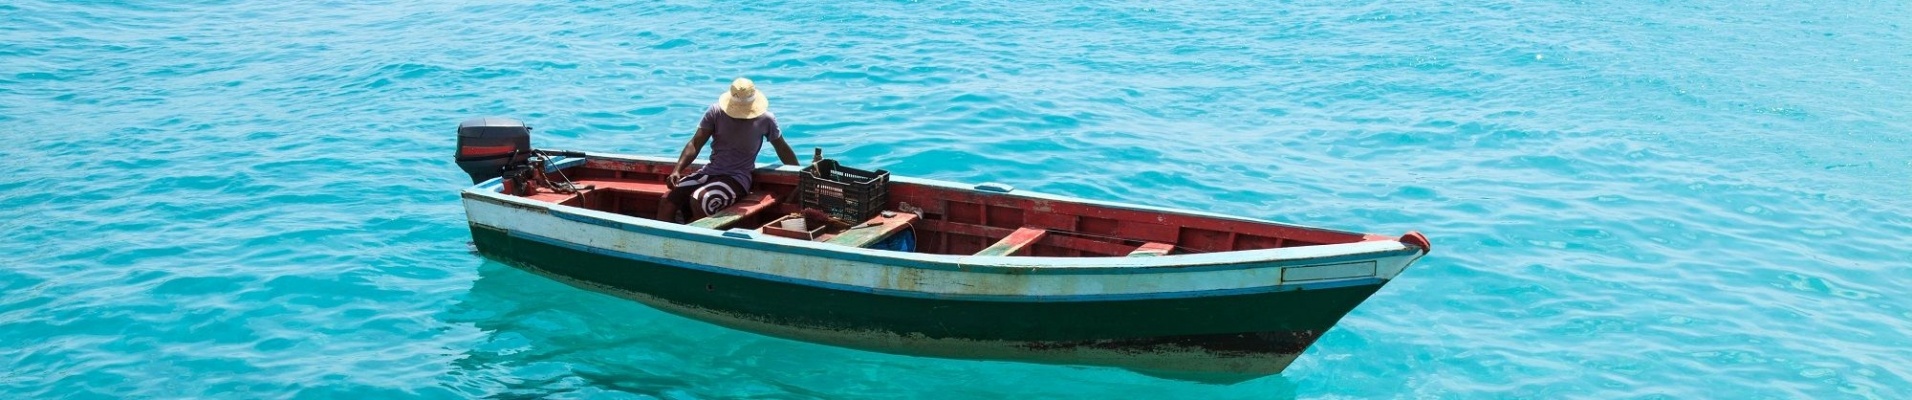 Pêcheur sur une barque traditionnelle, Santa Maria, Sal, Cap-Vert